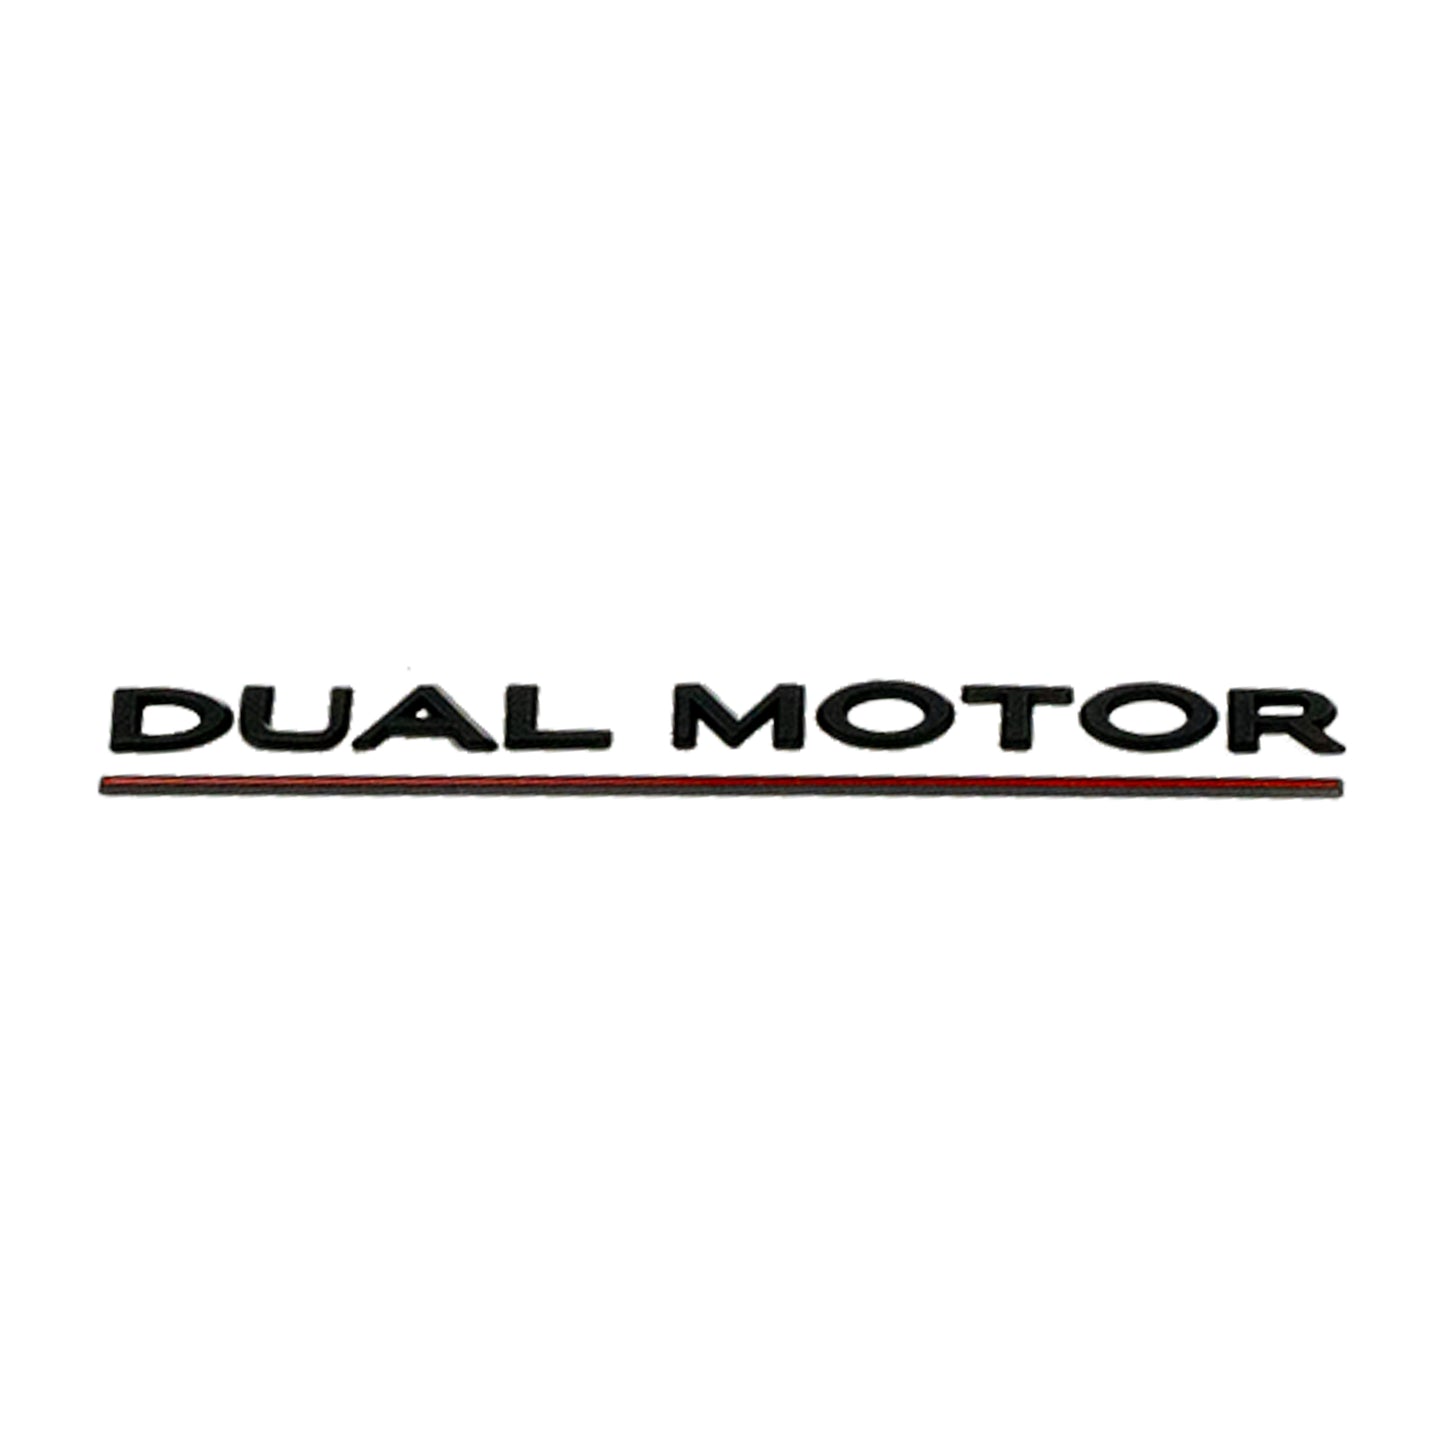 Model 3/Y Dual Motor Badge - Gloss/Matte Black